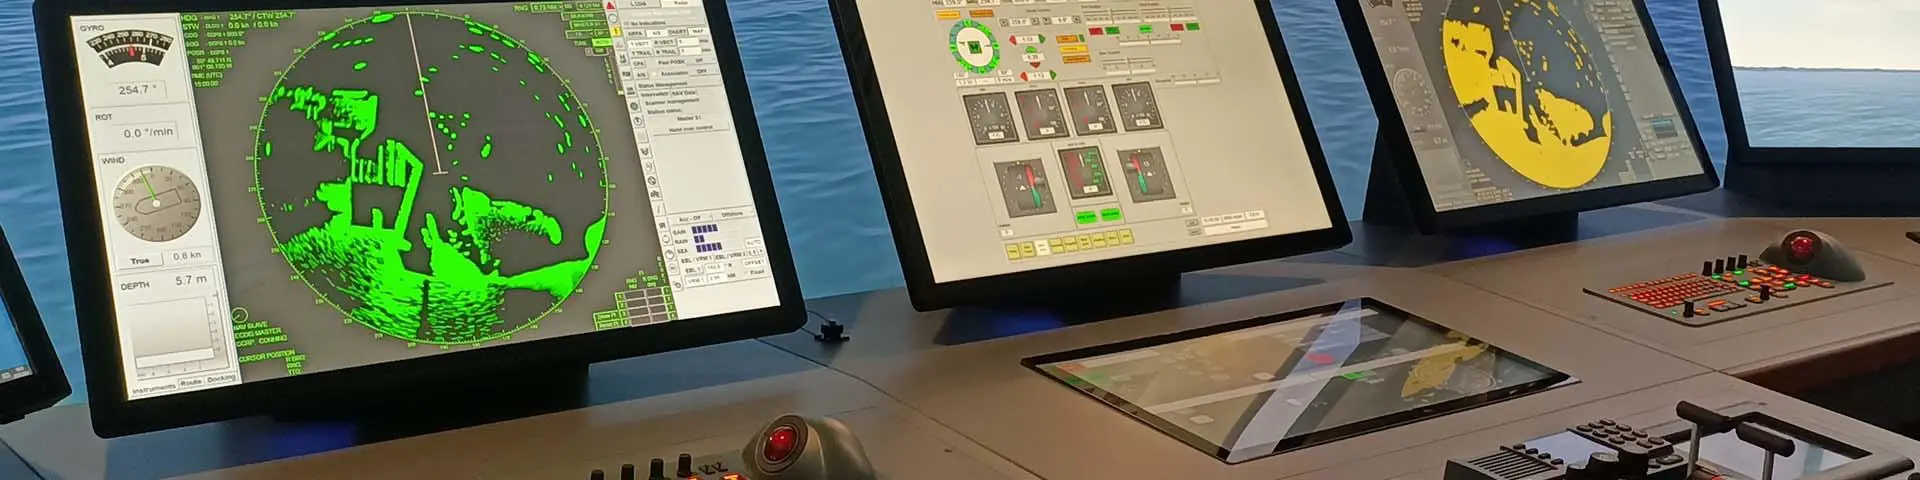 maritime simulator dashboard